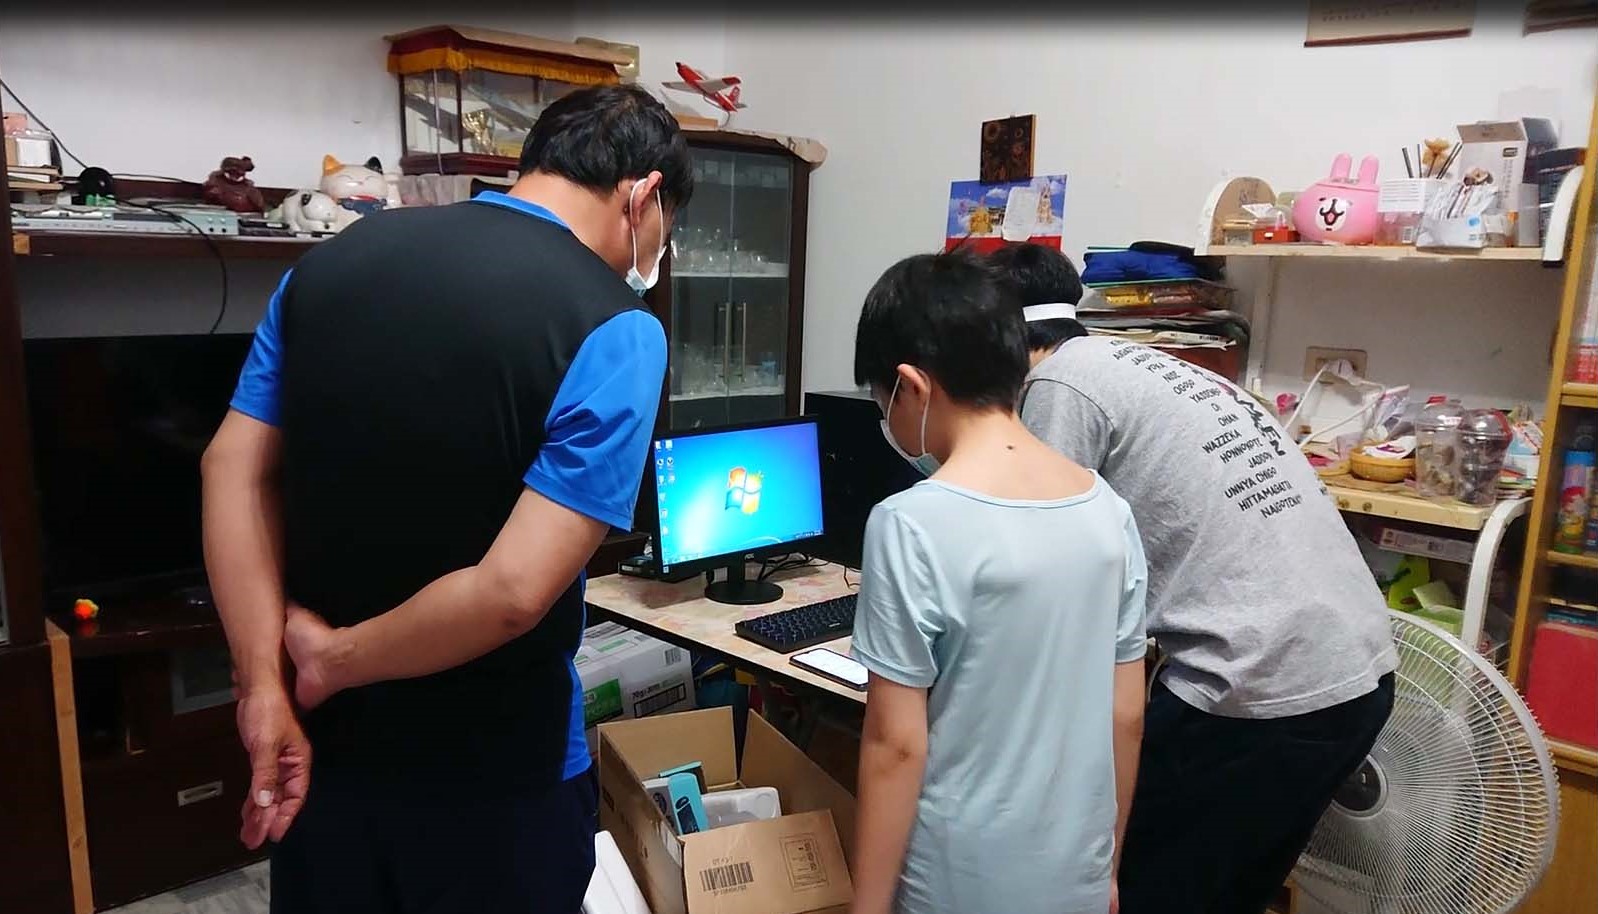 高雄靈糧堂贈電腦至學生家中，並協助安裝。(圖/高雄靈糧堂提供)